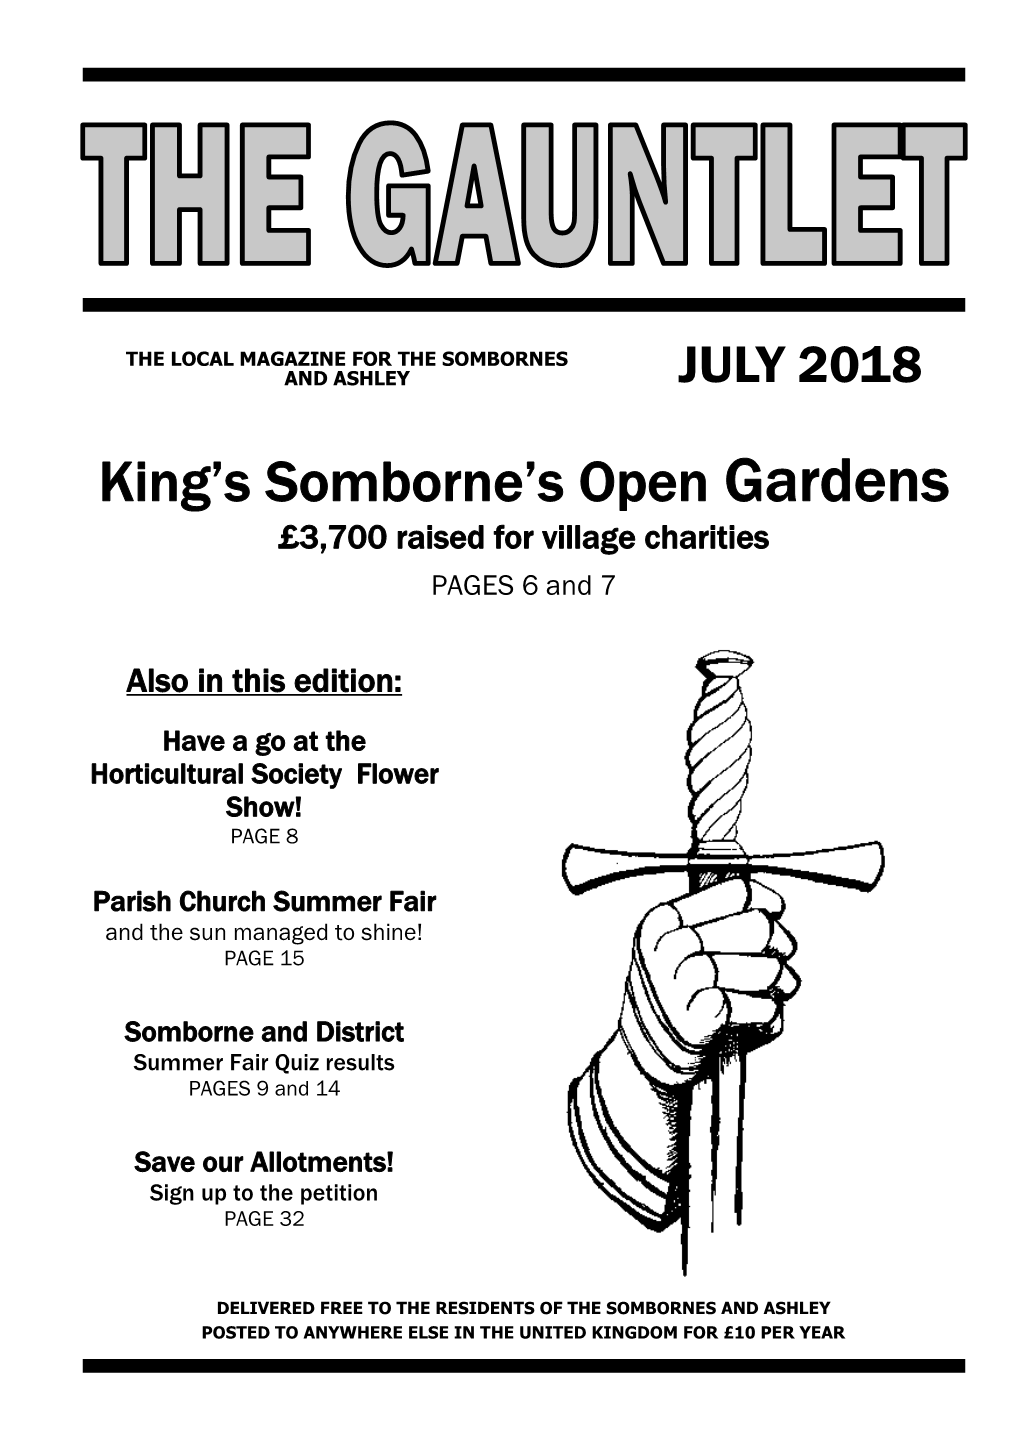 King's Somborne's Open Gardens